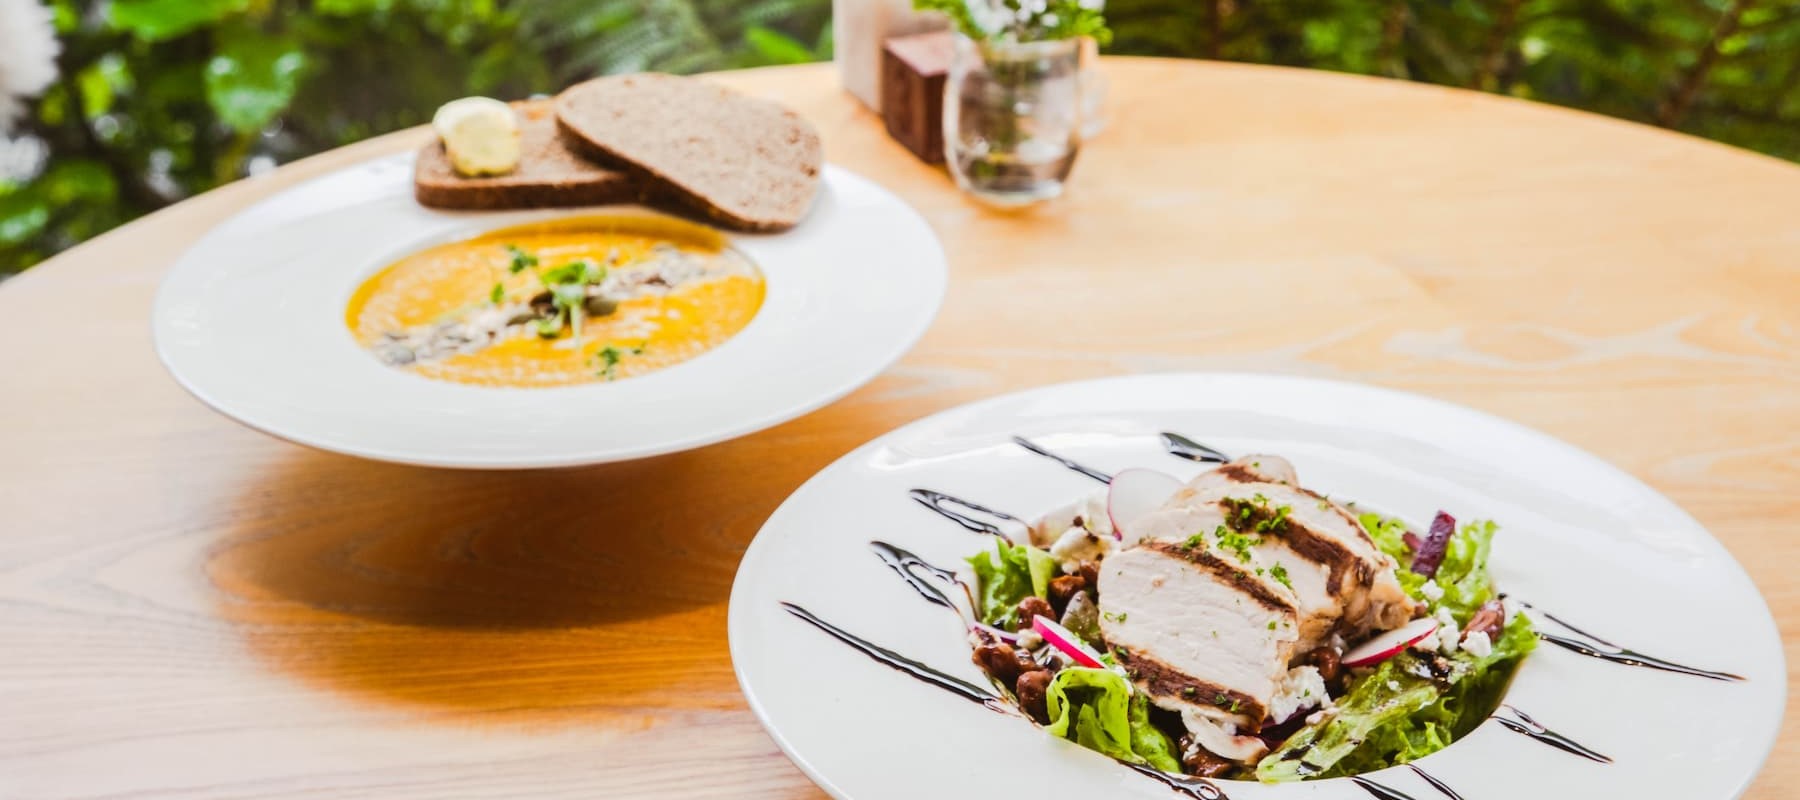 Pumpkin Soup and Chicken Salad served at Pio Pio Restaurant Milford Sound